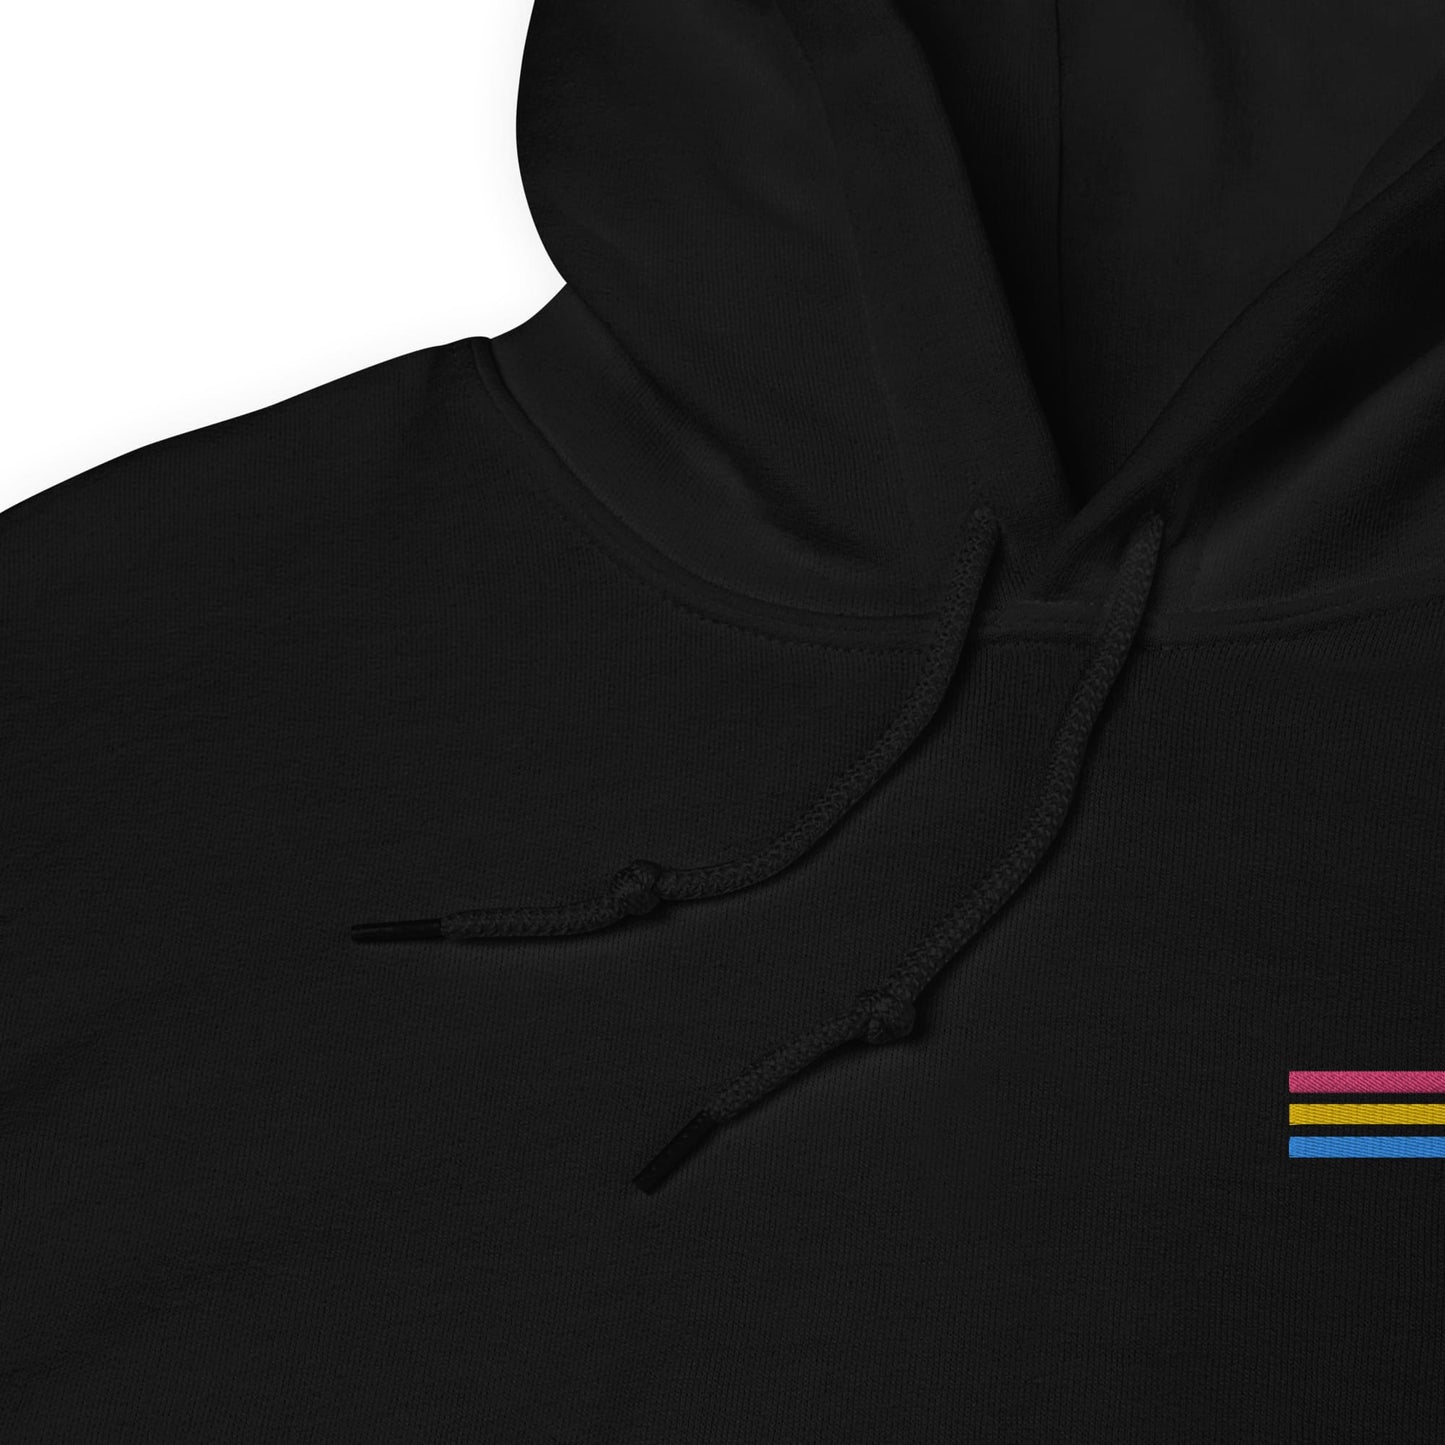 pansexual hoodie, subtle pan pride flag embroidered pocket design hooded sweatshirt, strings